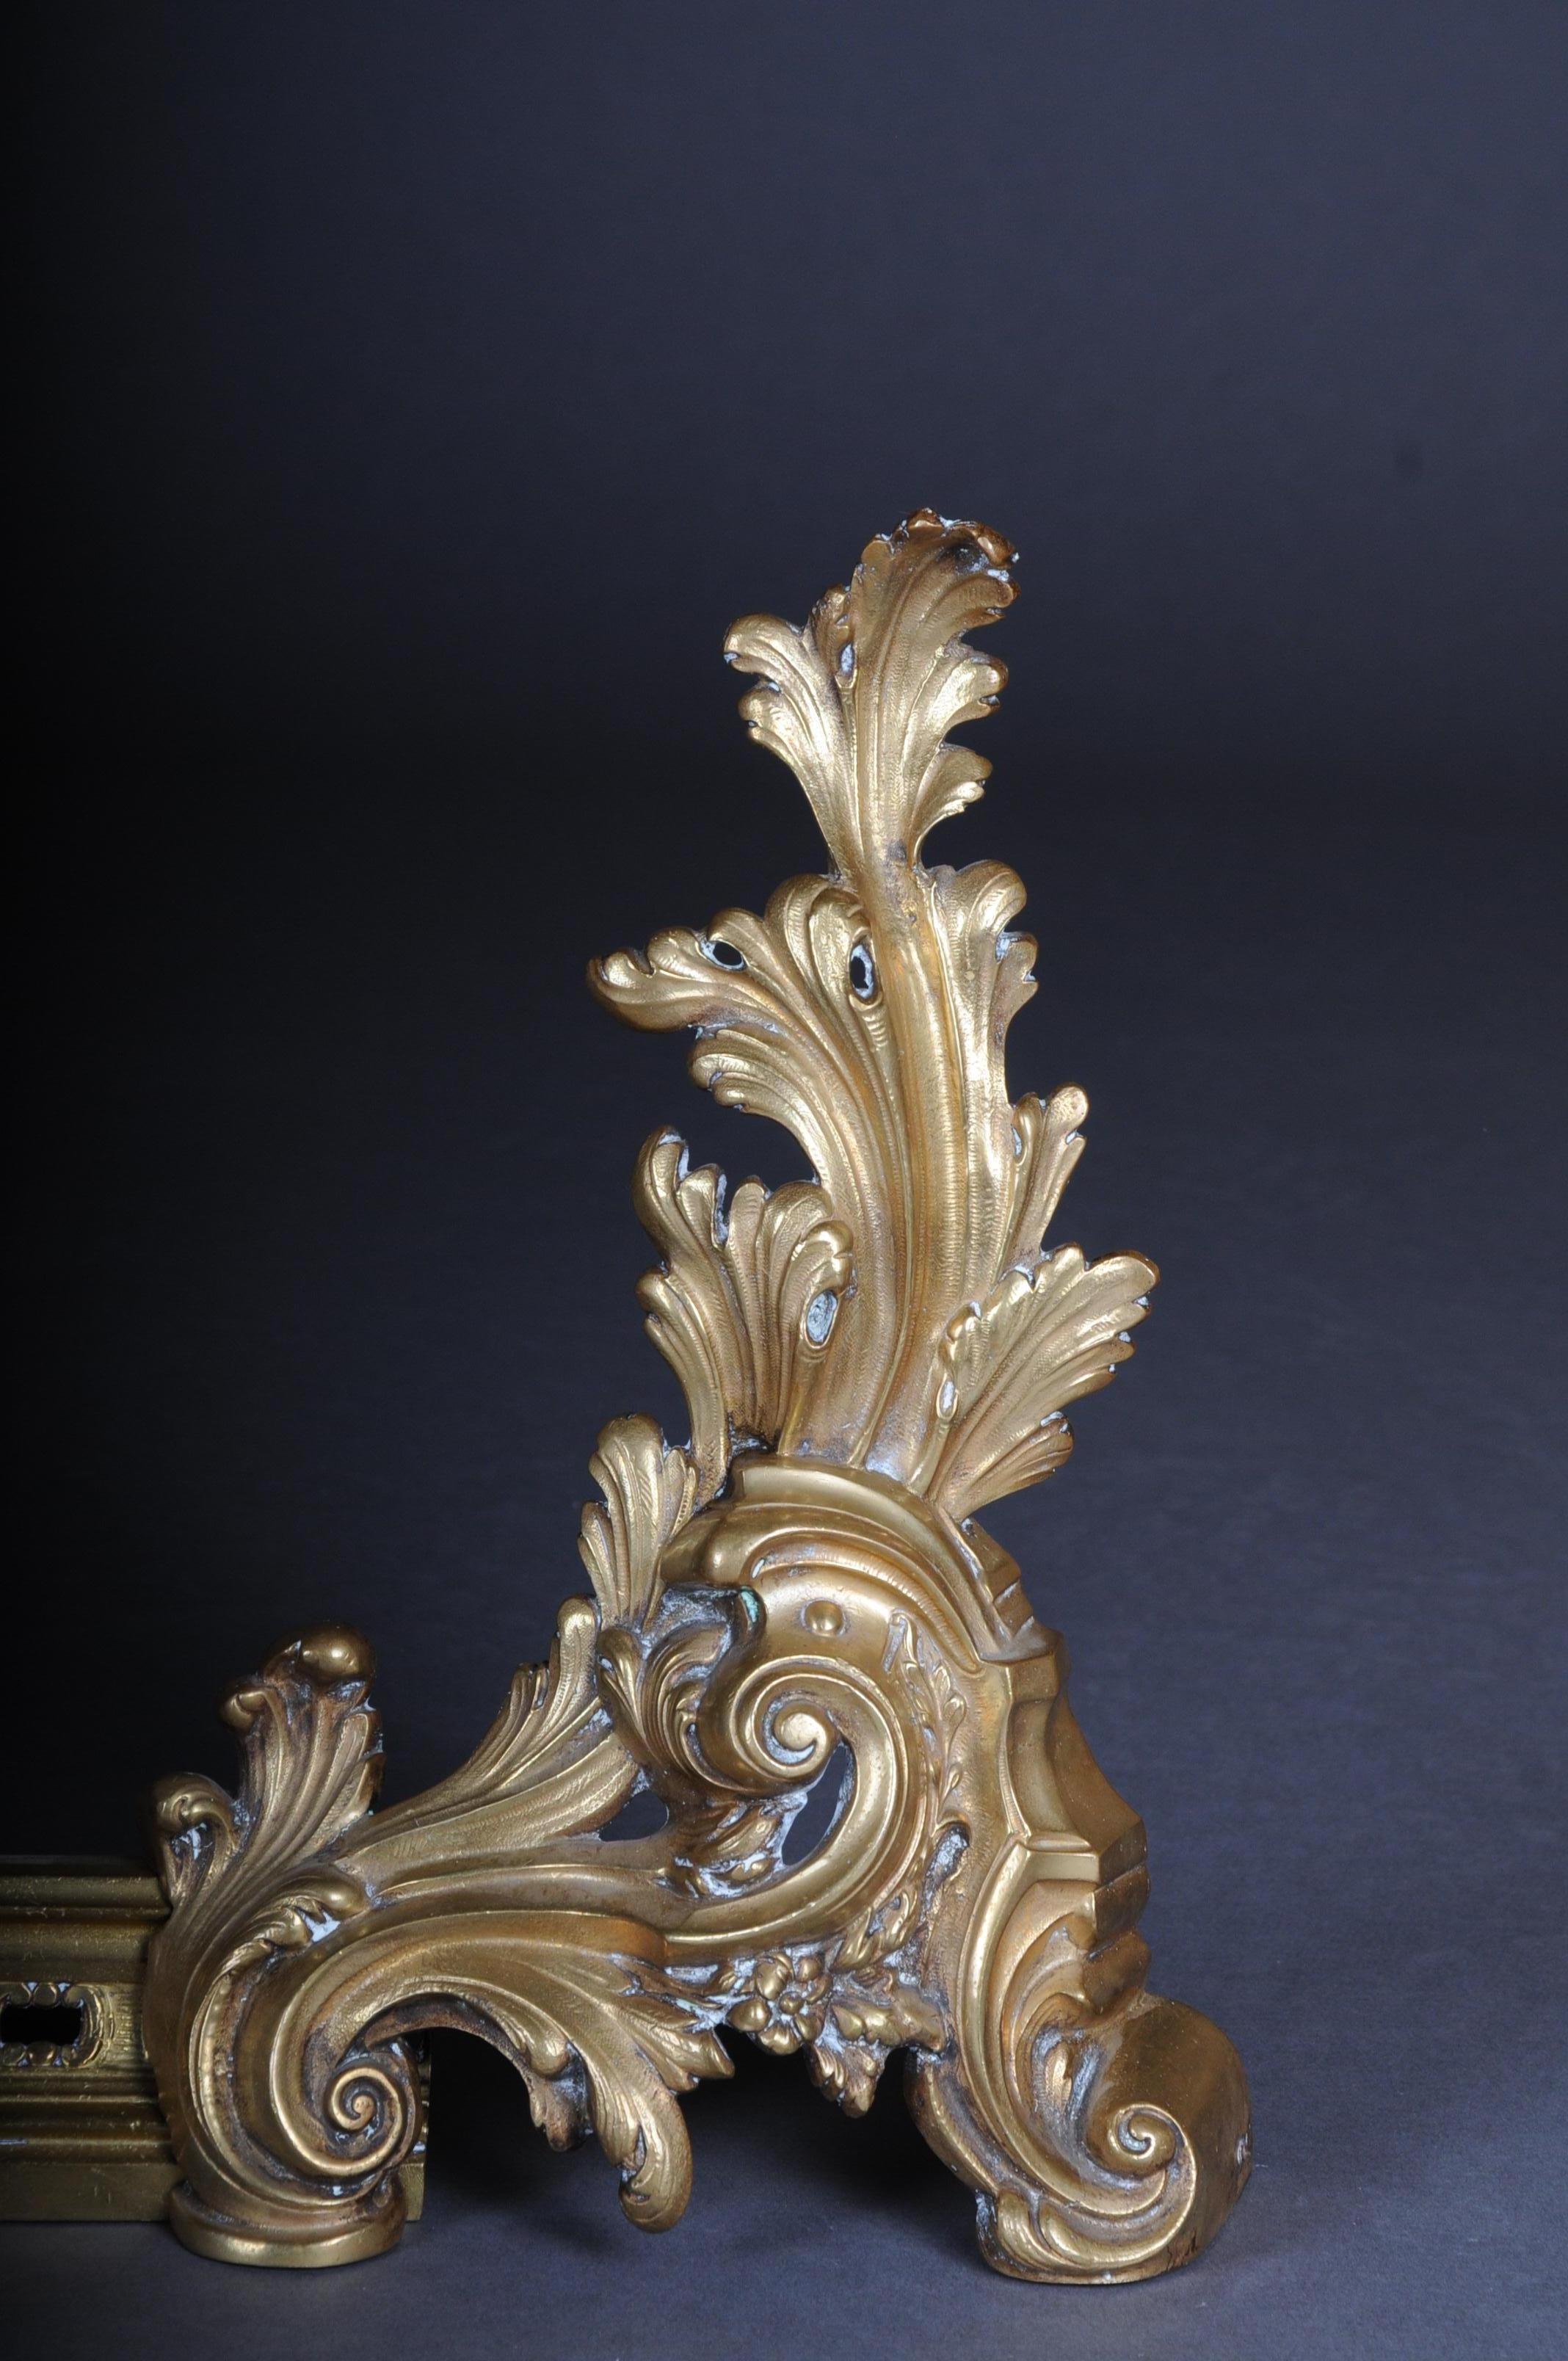 19. Jahrhundert antike Französisch Kaminsims / Kaminböcke Bronze
Außergewöhnliche, fein ziselierte und gegossene Bronze. Reichlich geschnitzter Körper.
Der gesamte Leuchter ist in sehr aufwändiger Handarbeit gefertigt. Dieses Modell ist eines der